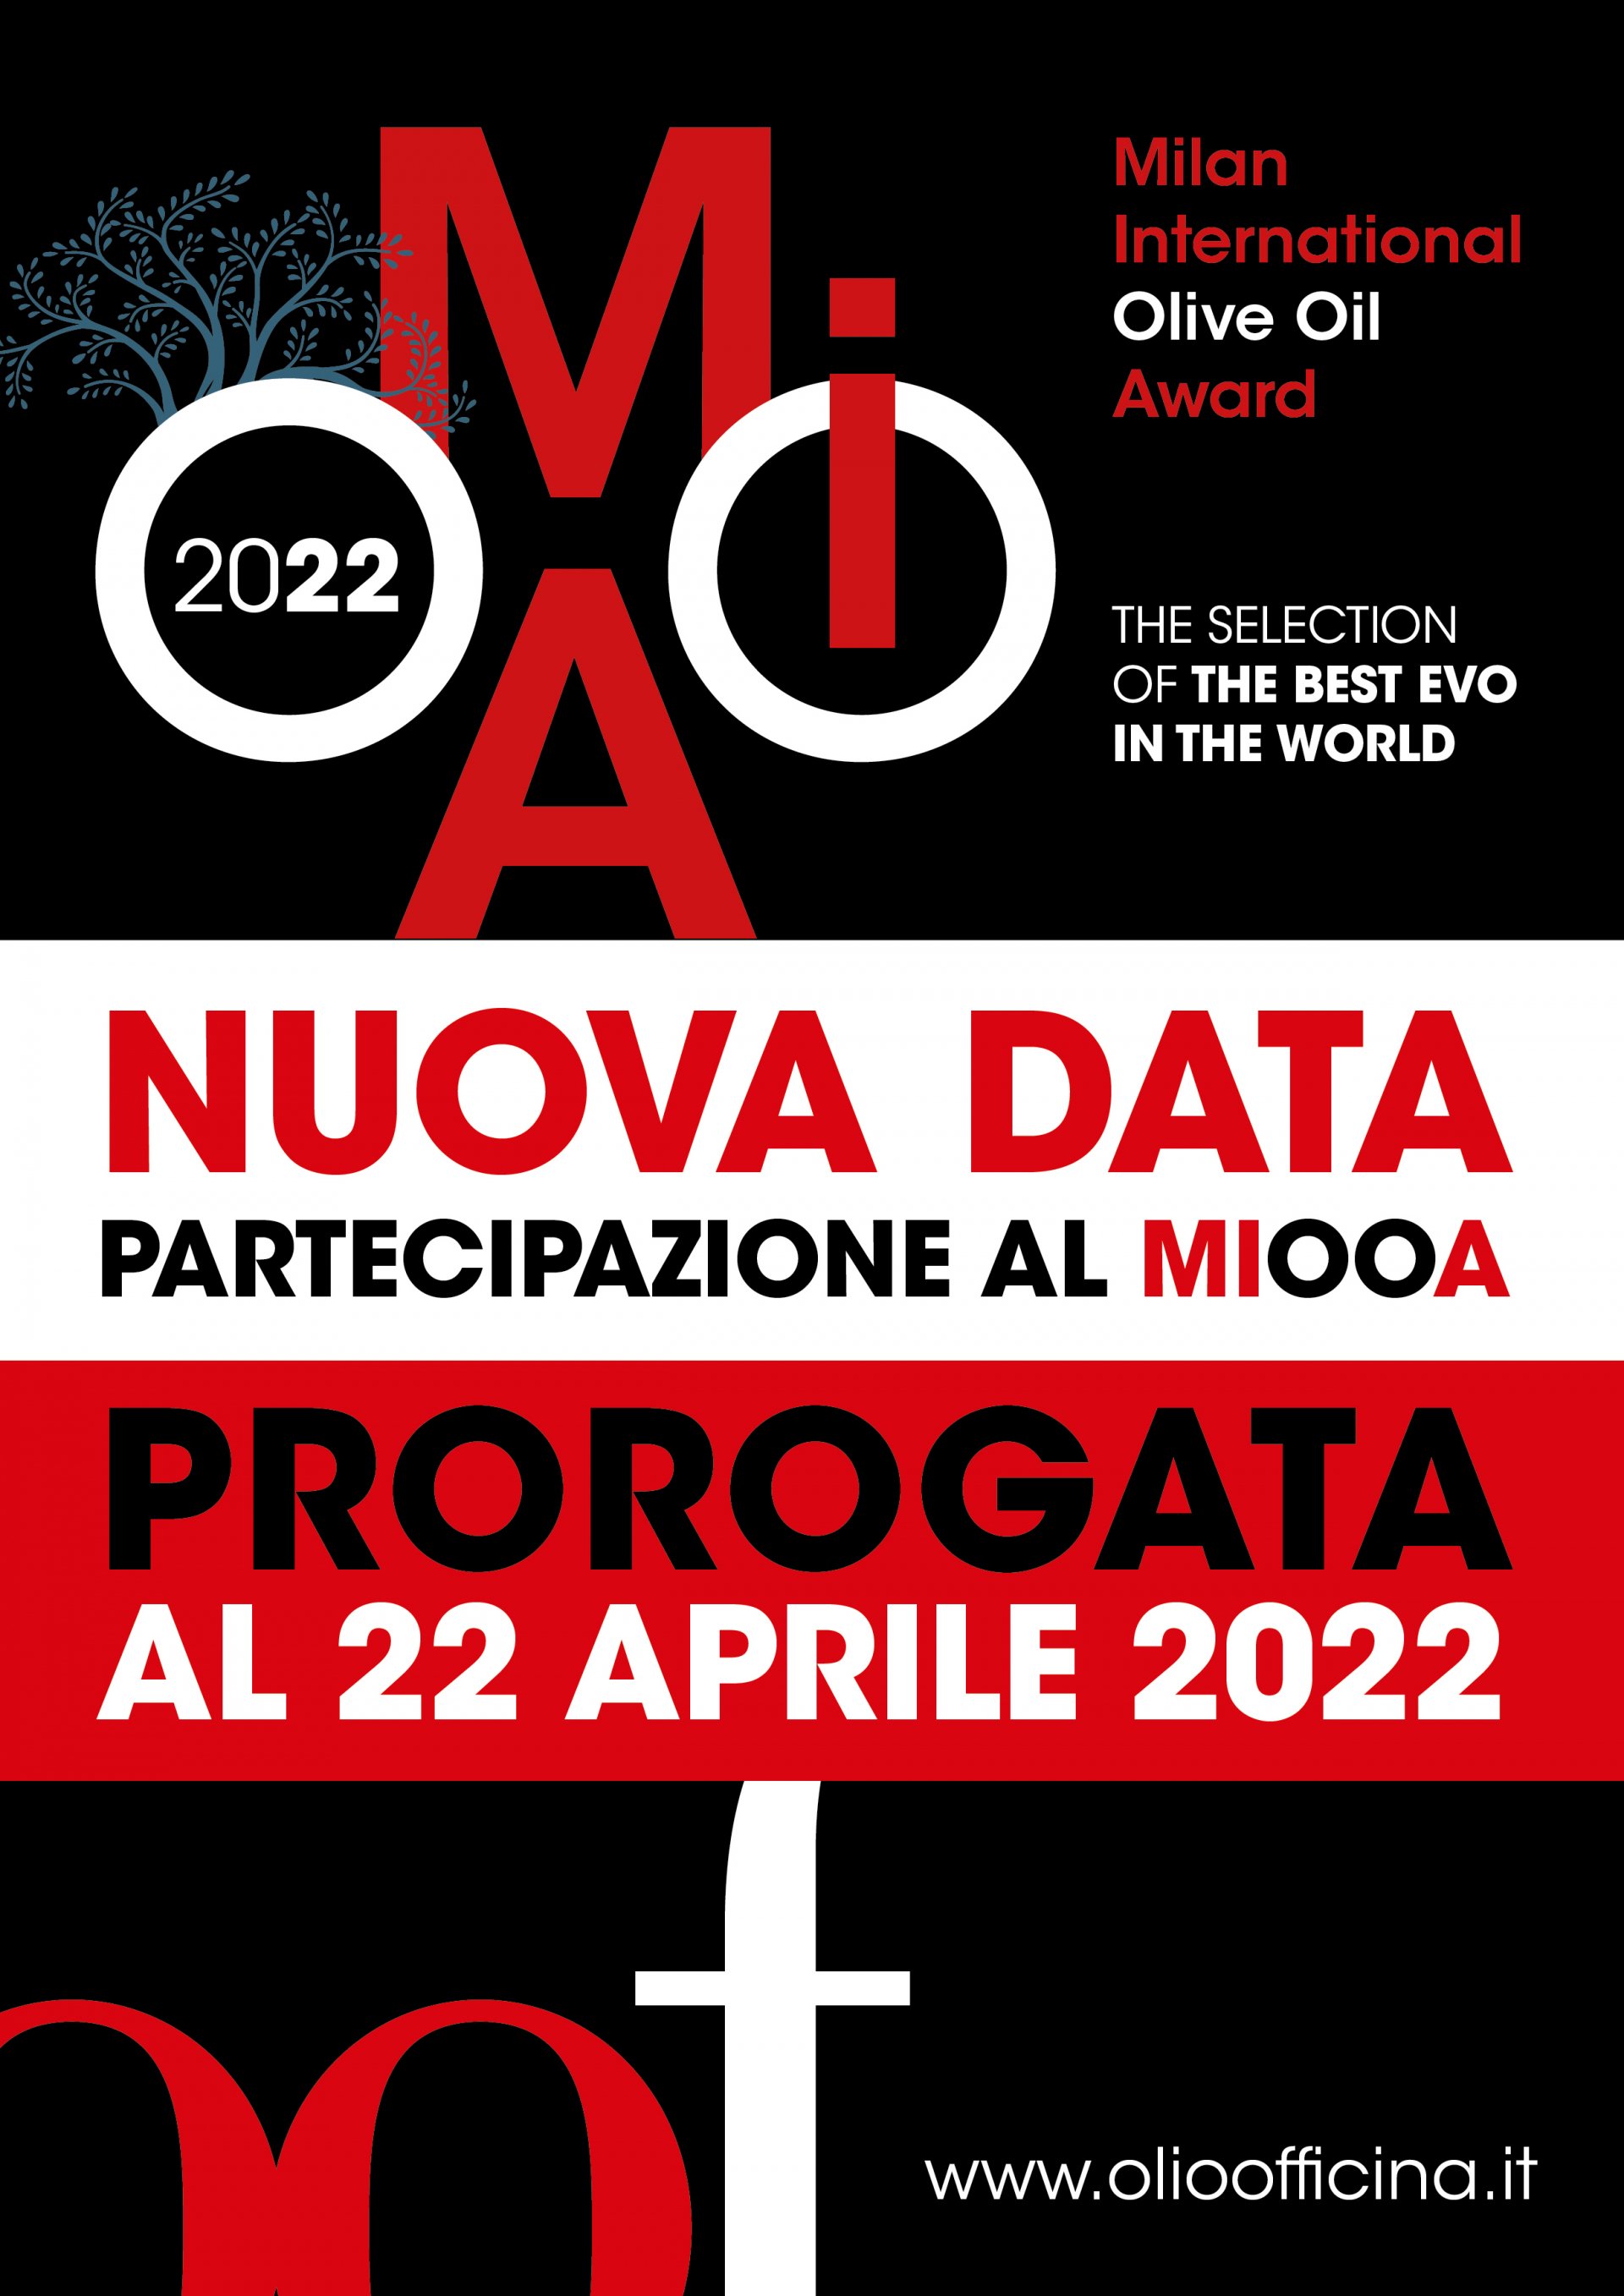 Extra vergini da inviare entro il 22 aprile. Per il Milan International Olive Oil Award